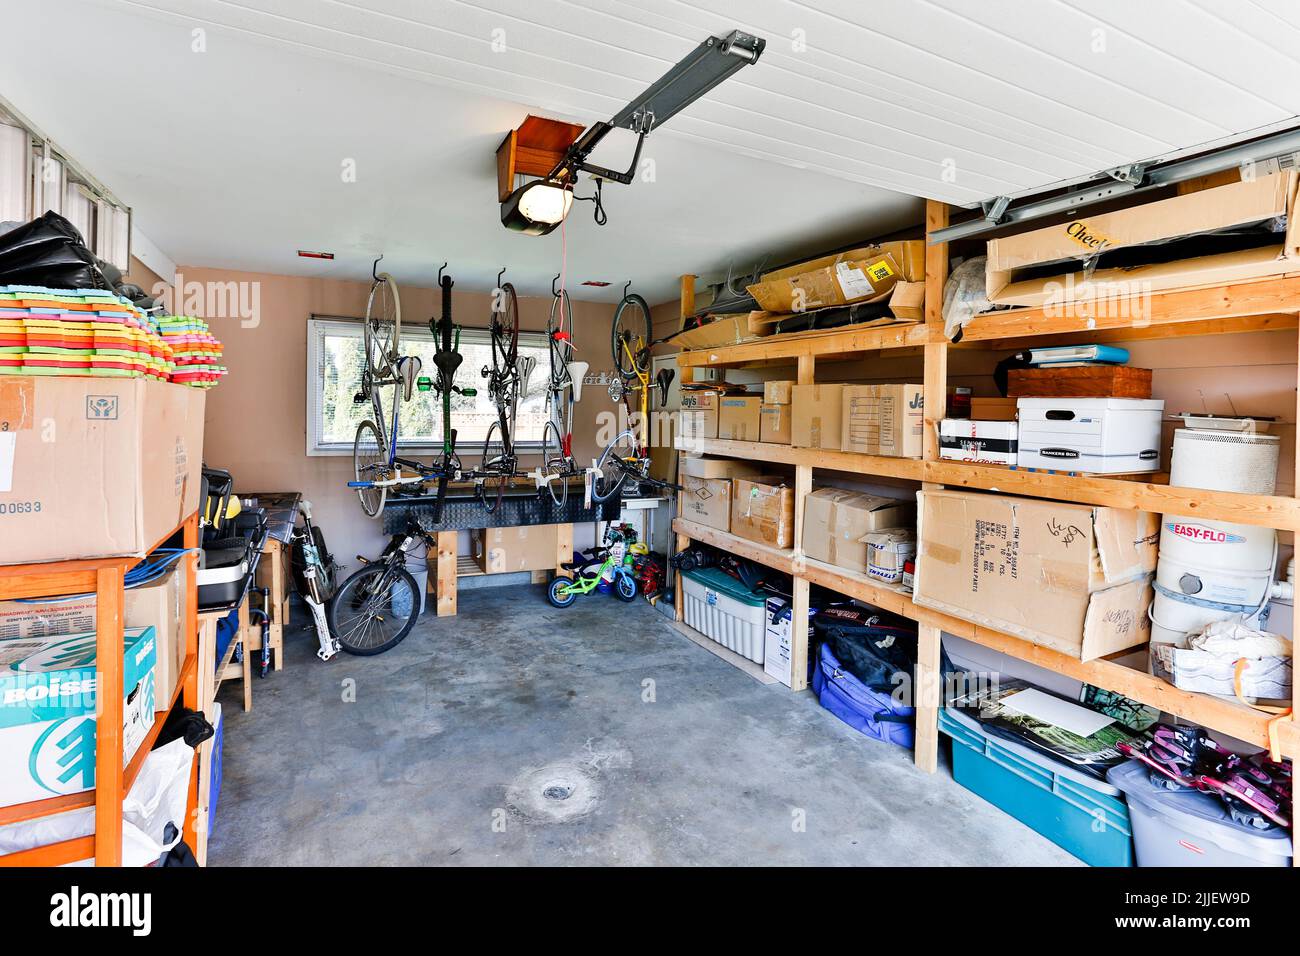 Squamish, British Columbia, Canadá - 2 de abril de 2016: Un almacenamiento de garaje de casa interior organizado lleno de cosas personales y basura apilados en estanterías. Foto de stock